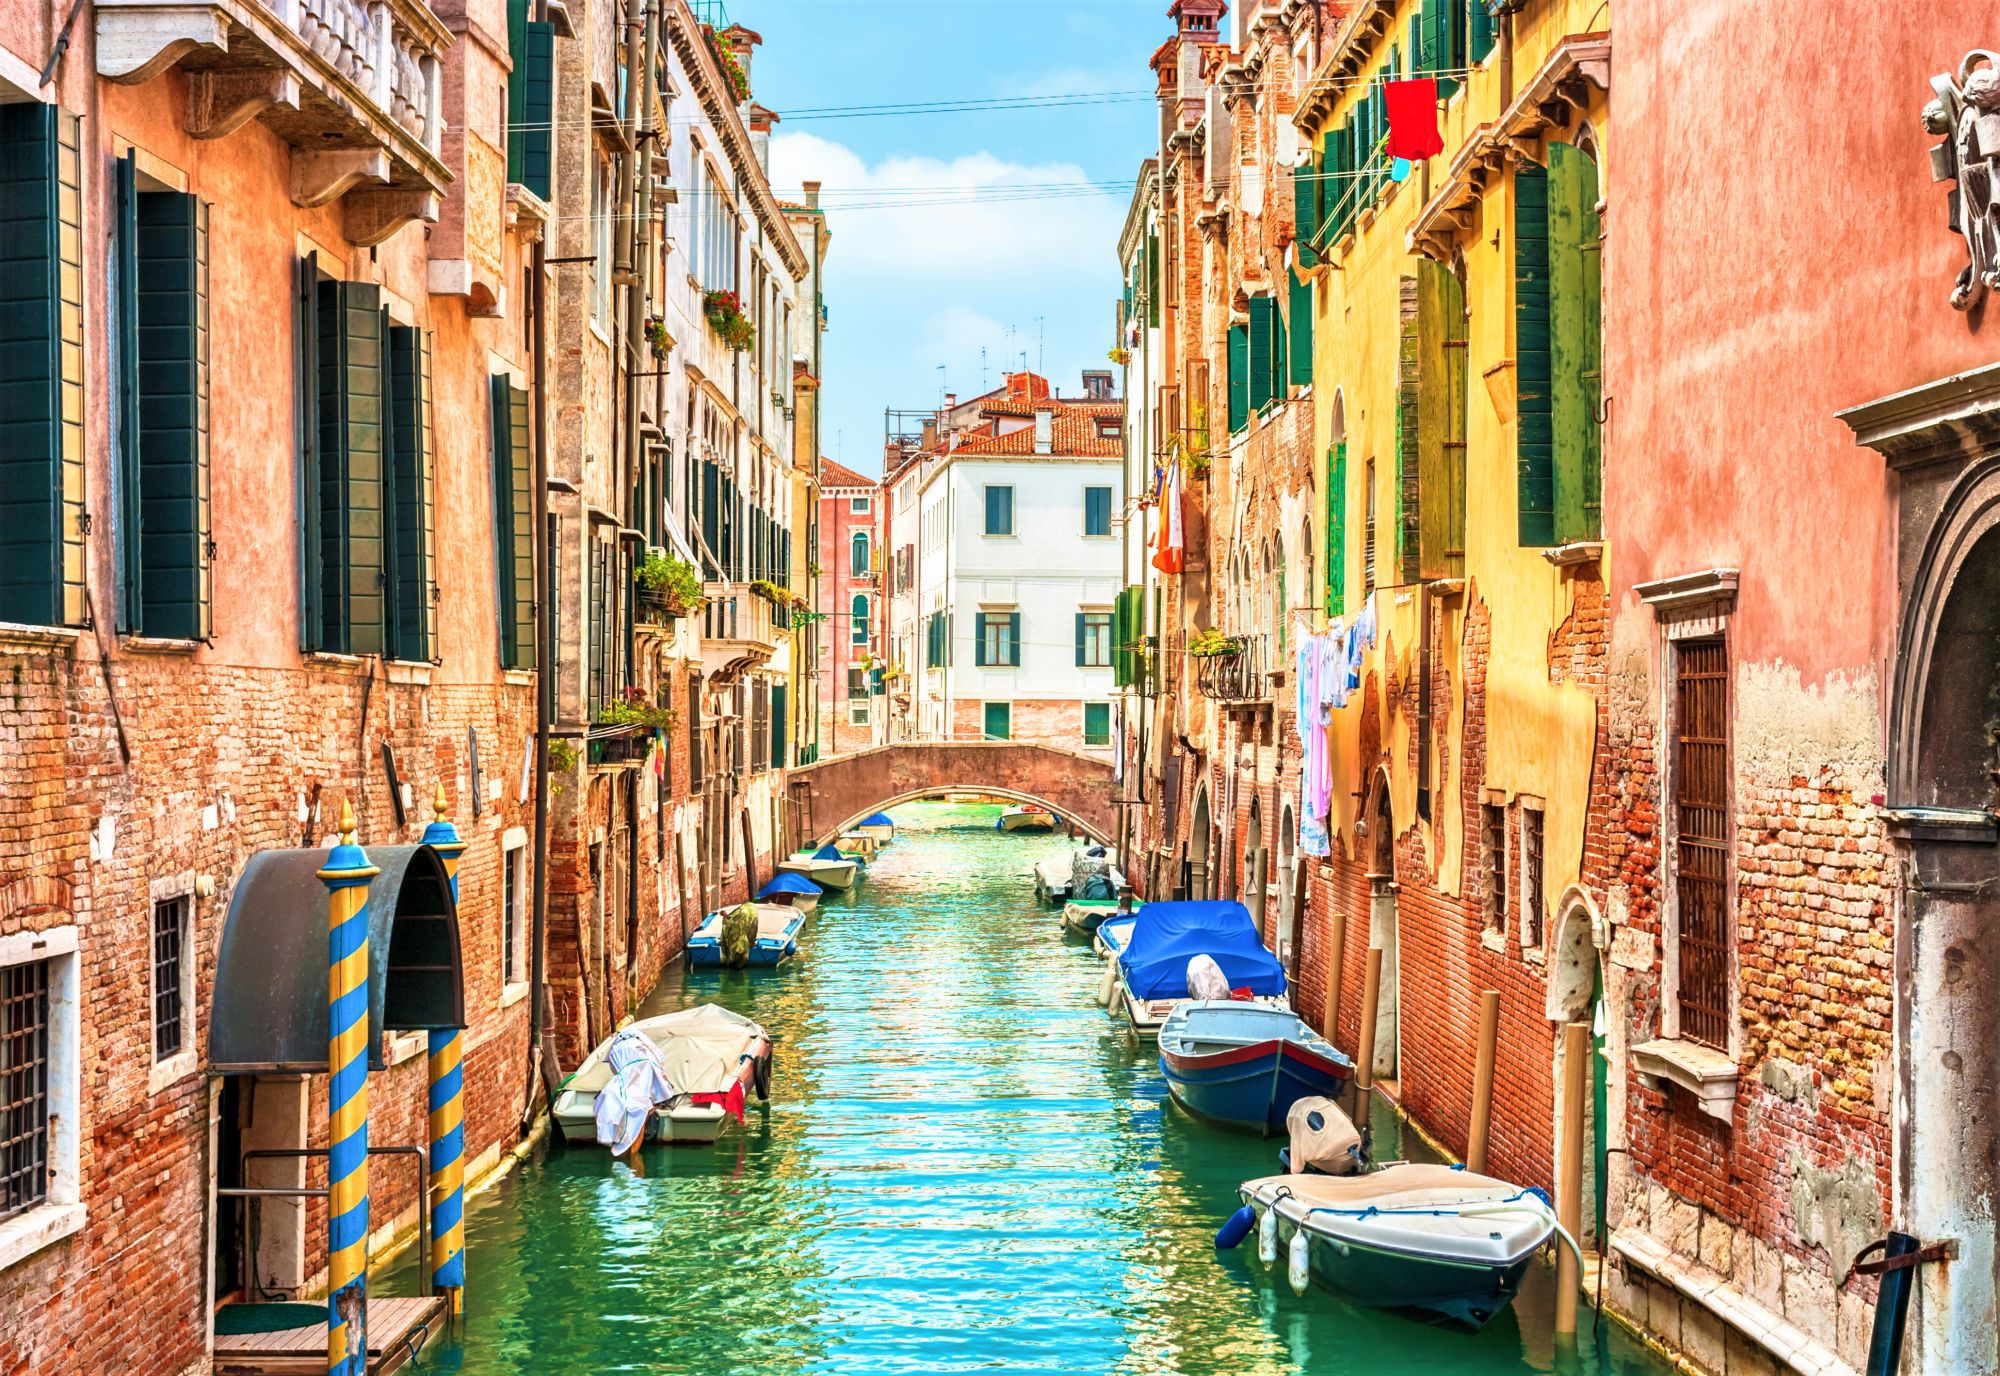 Холст ХК-5854 с красками Завораживающая Венеция 40*50см Рыжий кот - Самара 